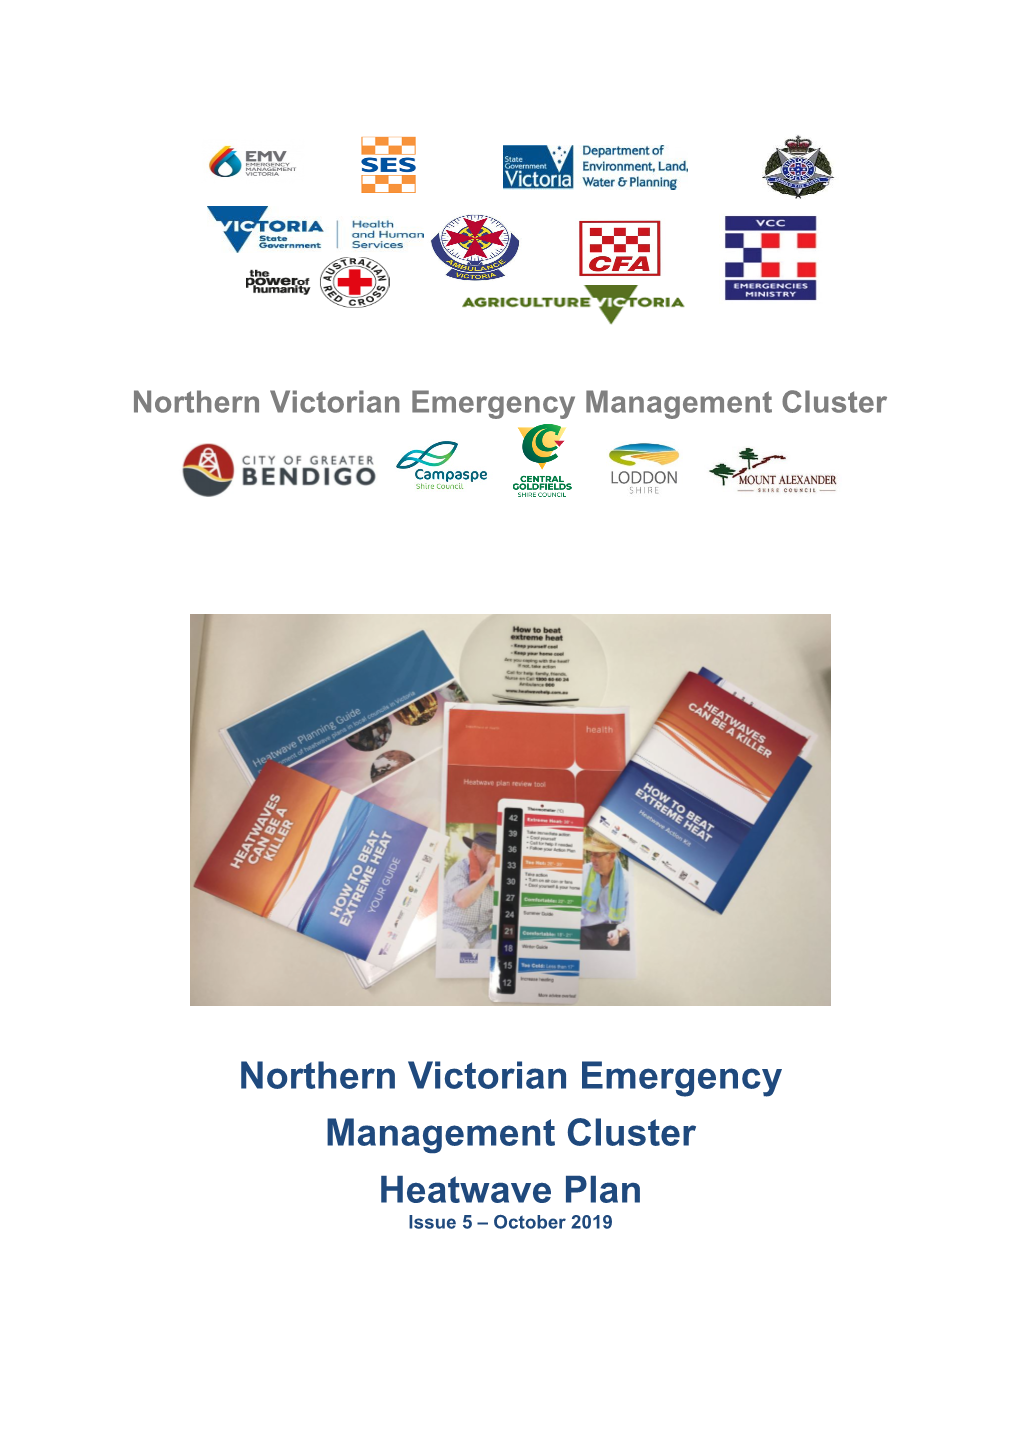 Northern Victorian Emergency Management Cluster Heatwave Plan